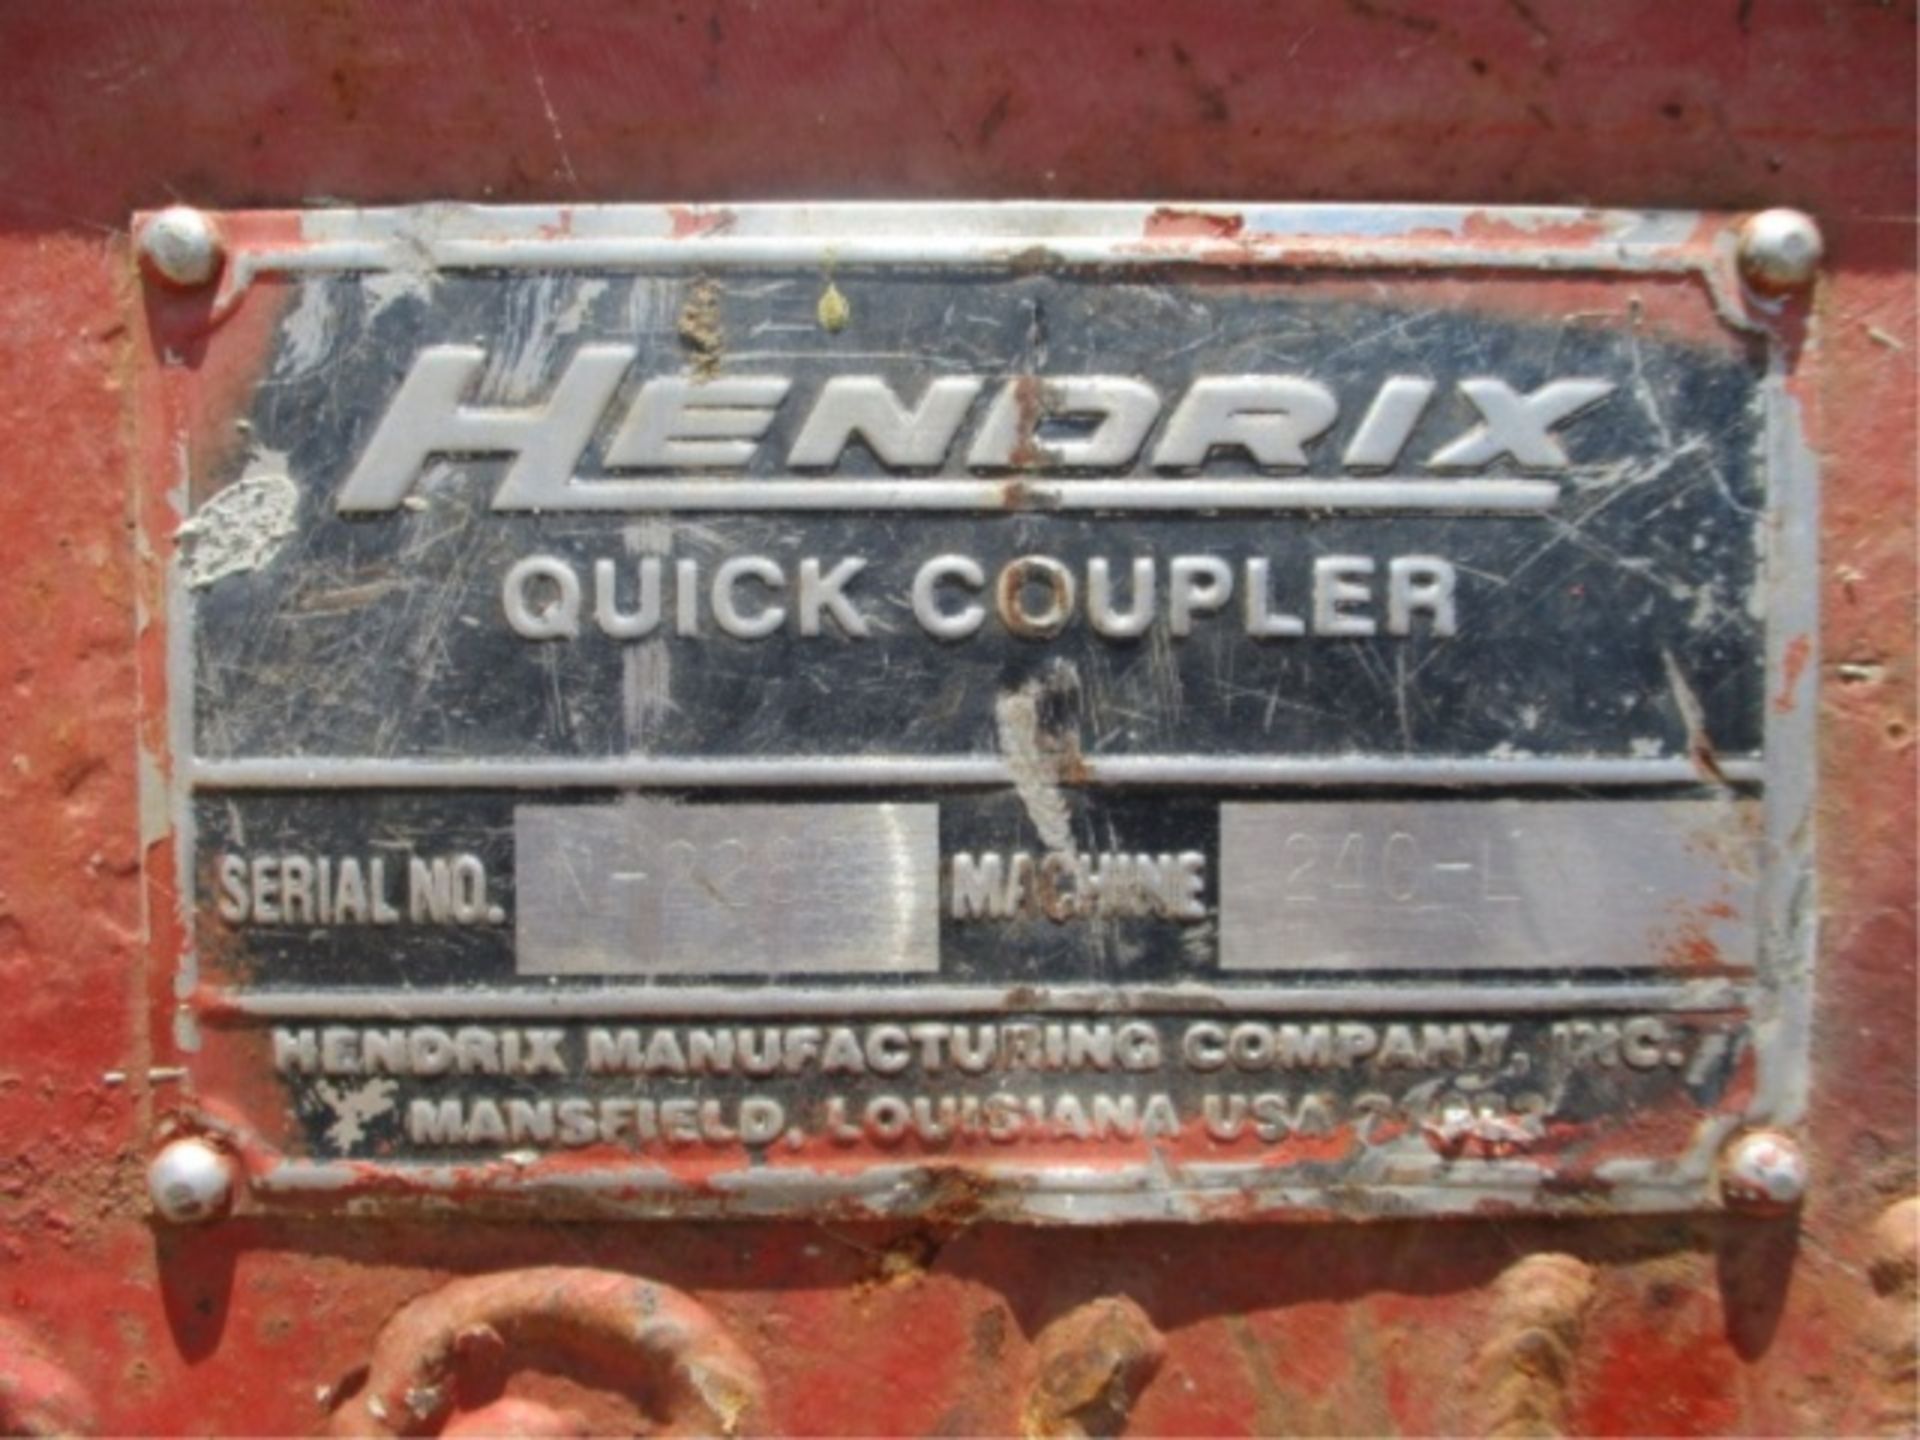 2005 Linkbelt 240 LX Hydraulic Excavator, Isuzu 6-Cyl Diesel, Hendrix Q/C, Cab W/AC, 24" Tooth - Image 28 of 39